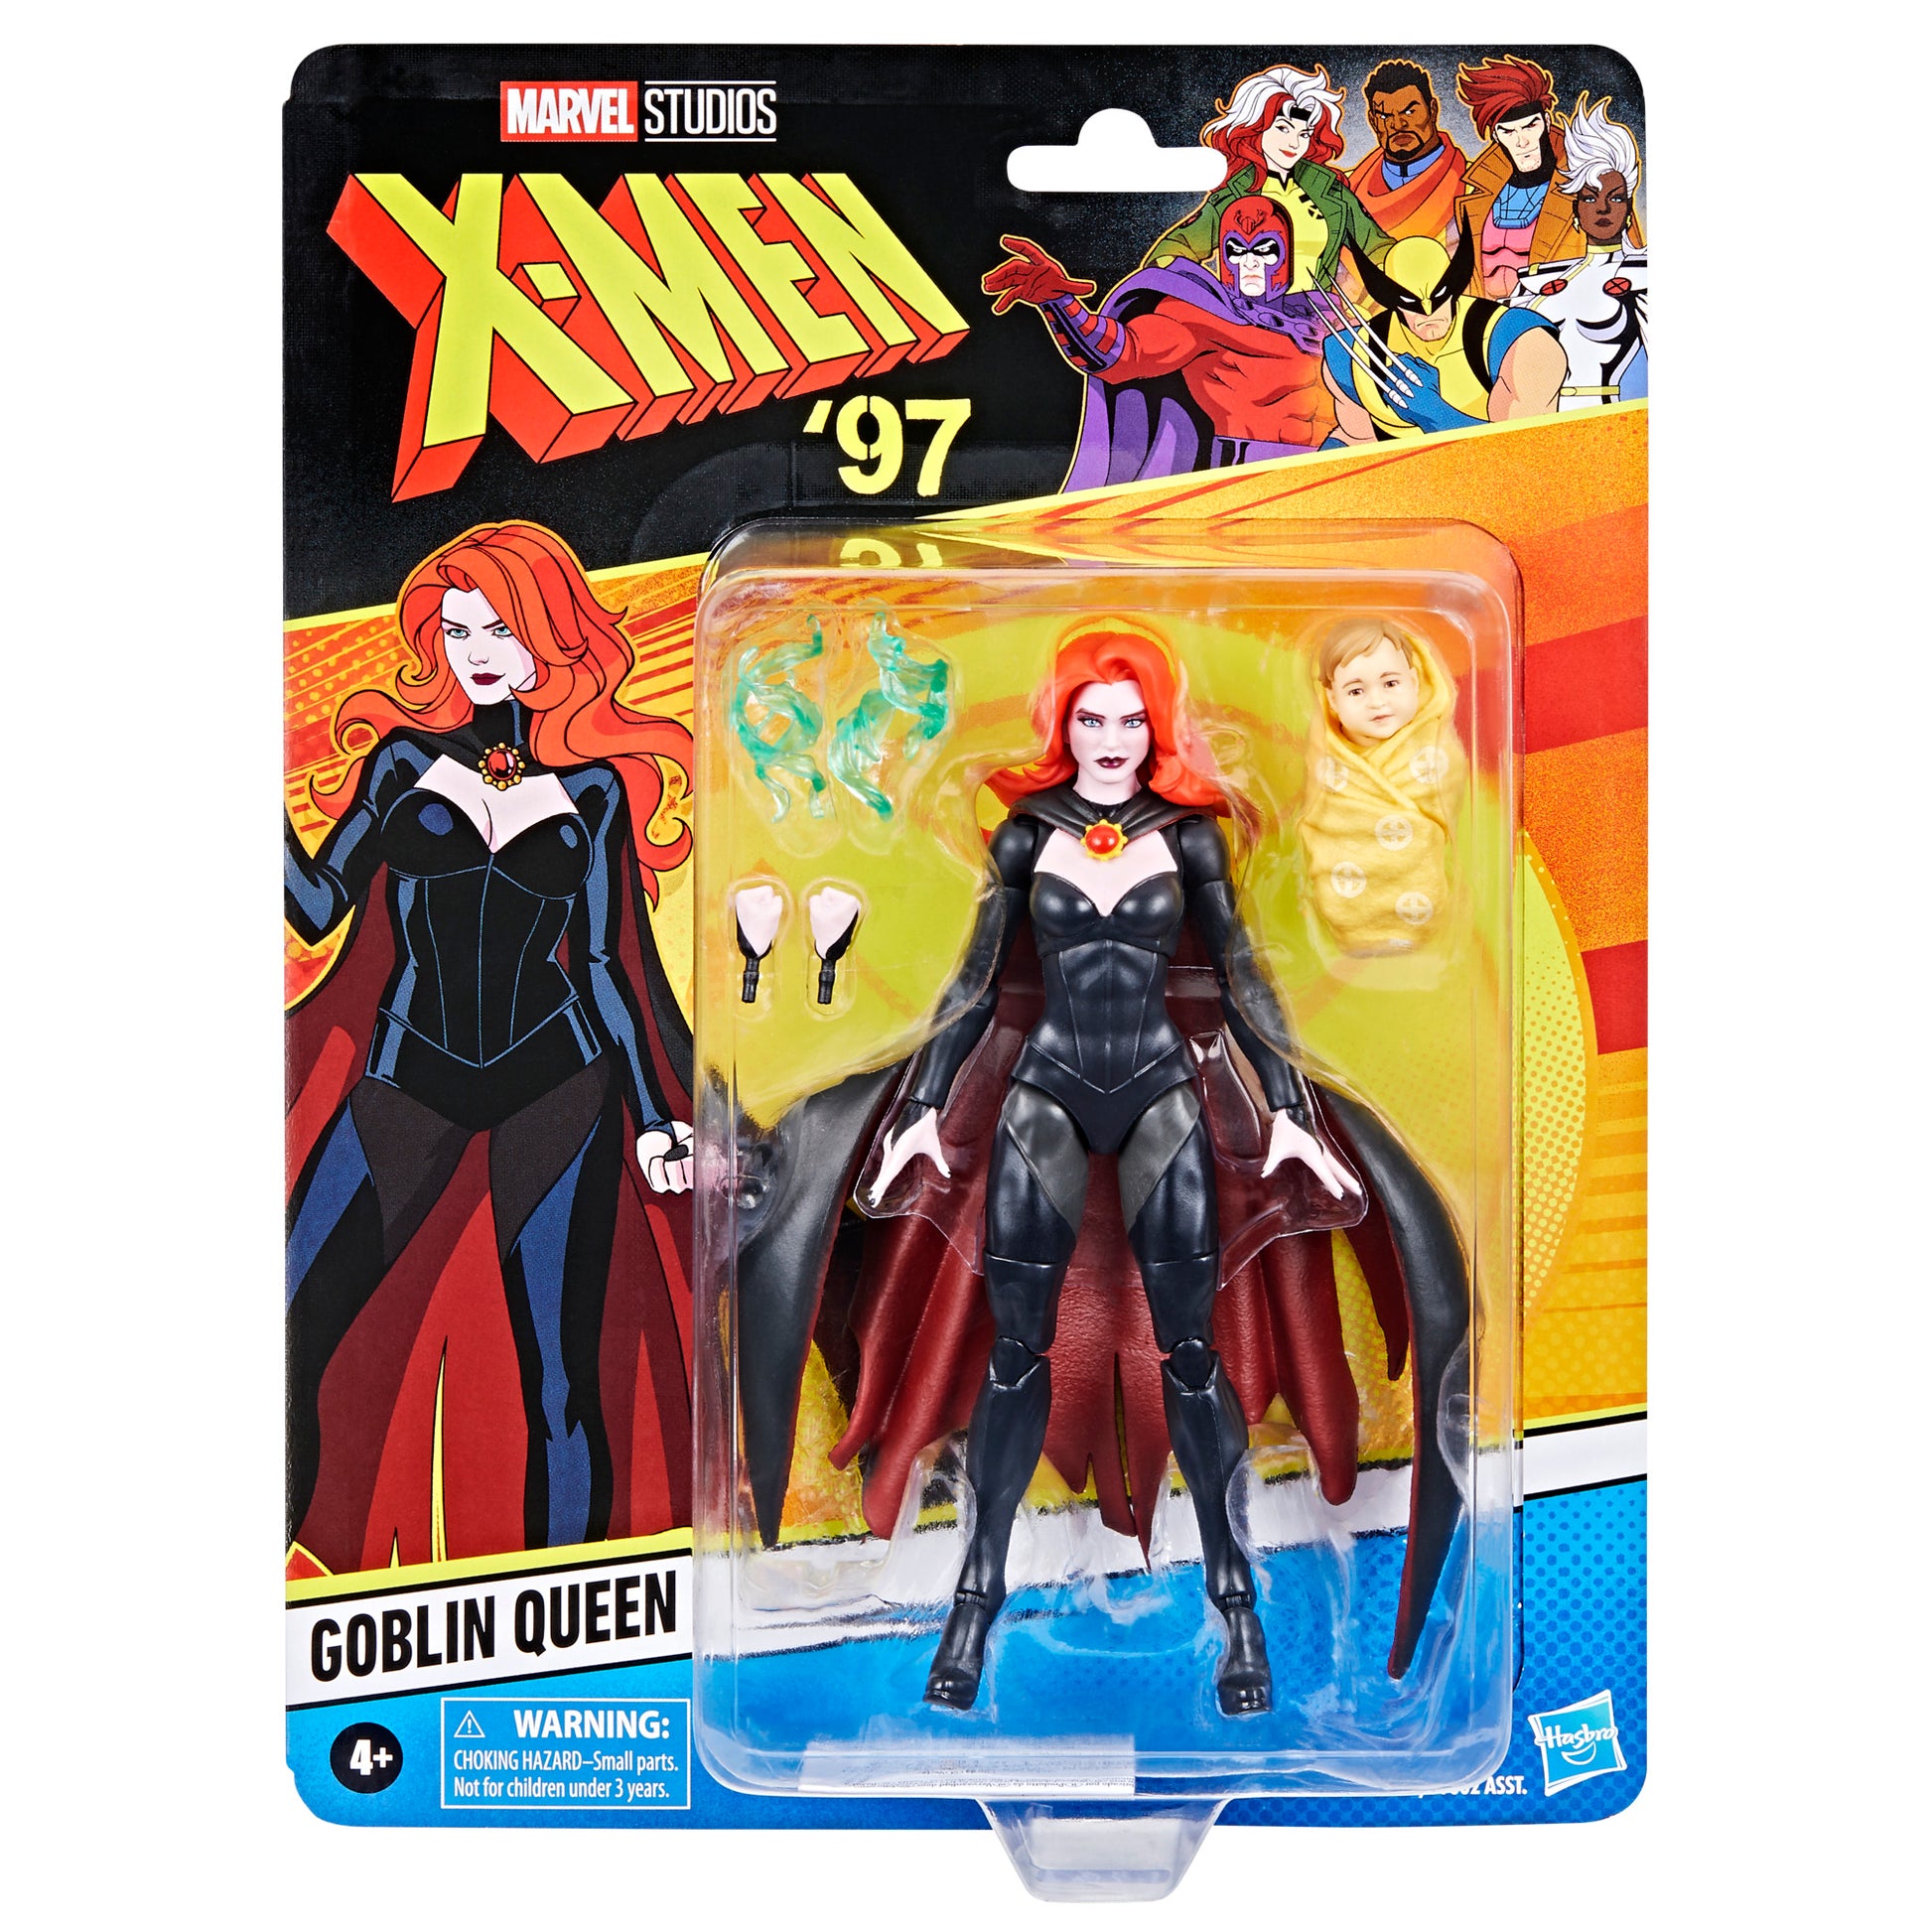 Marvel Legends Series Goblin Queen, X-Men ‘97 Collectible 6 Inch Action Figure